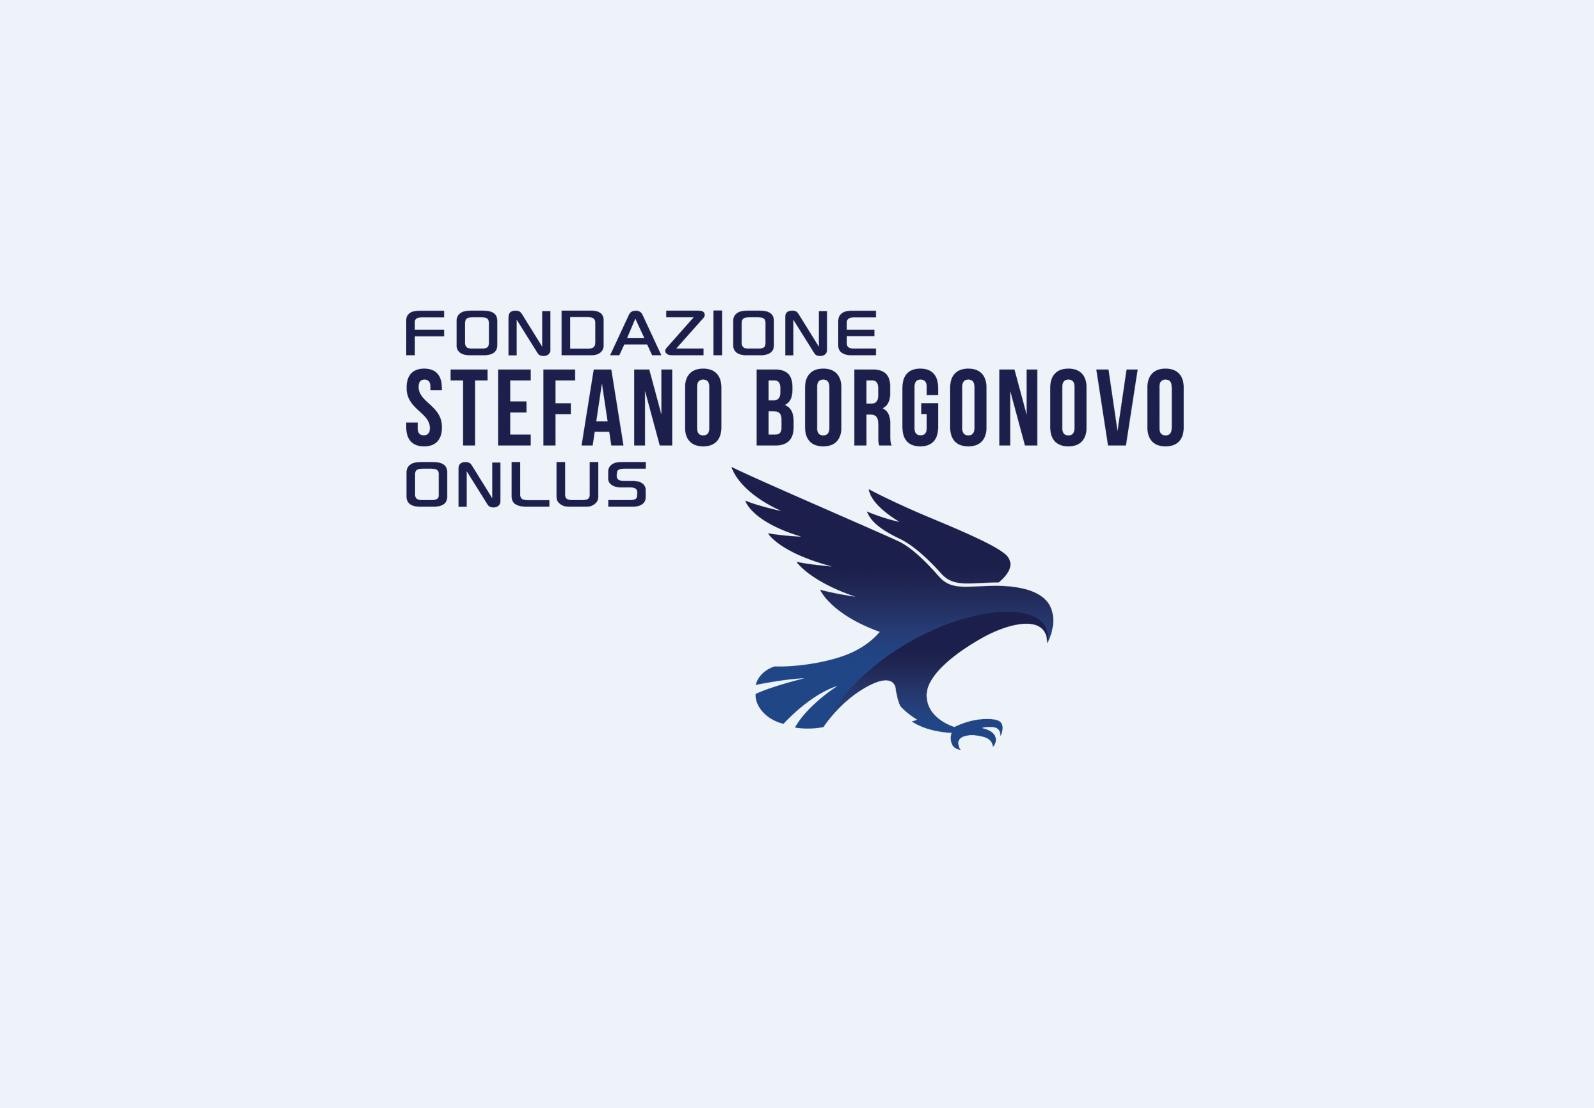 Fondazione Stefano Borgonovo